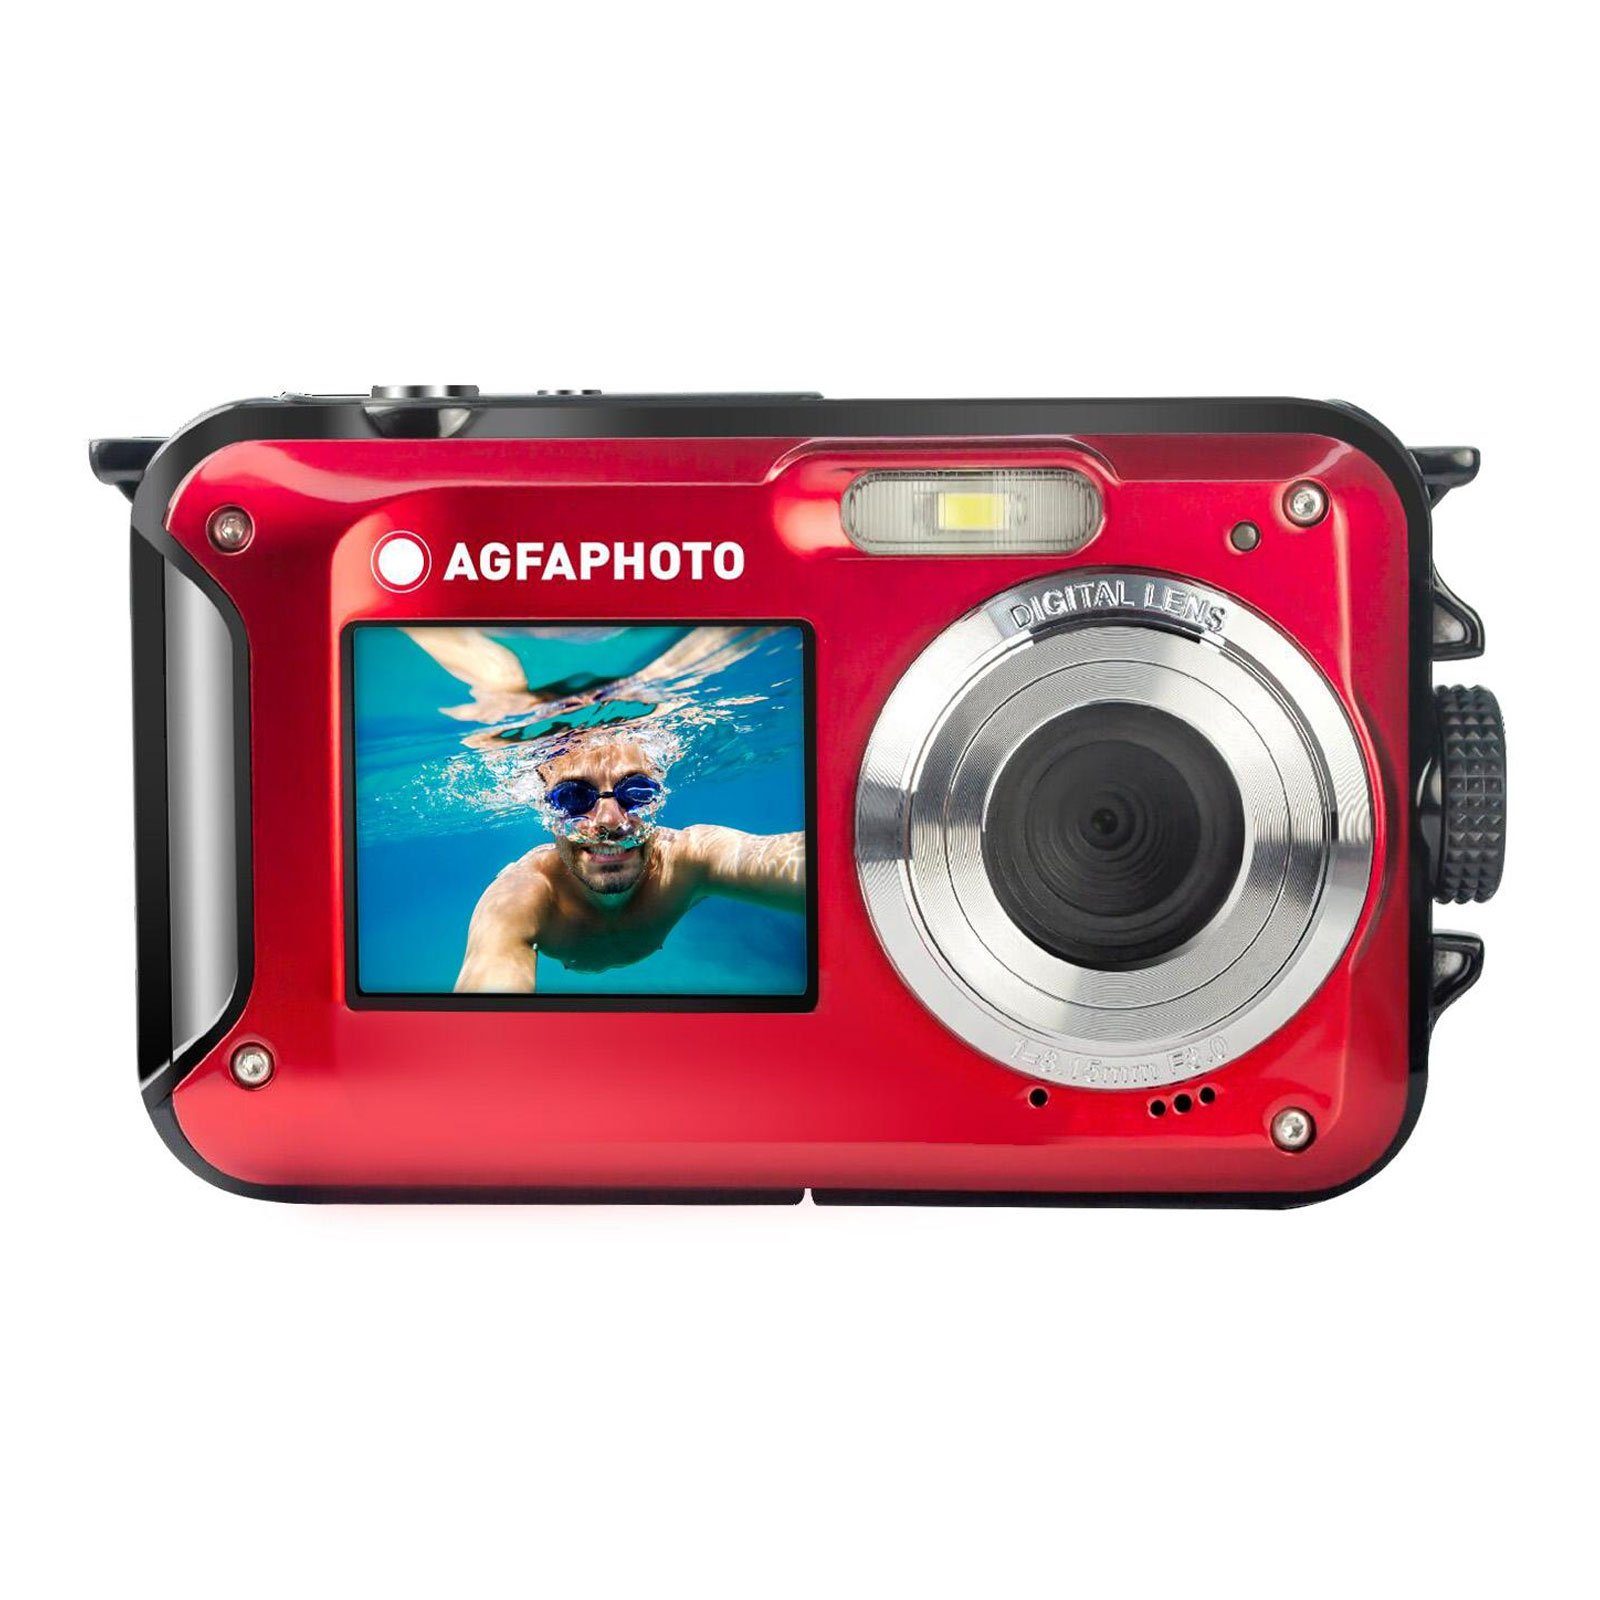 AGFA WP8000 Kompaktkamera (Gesichtserkennung, 16X digital zoom, Bildstabilisierung)